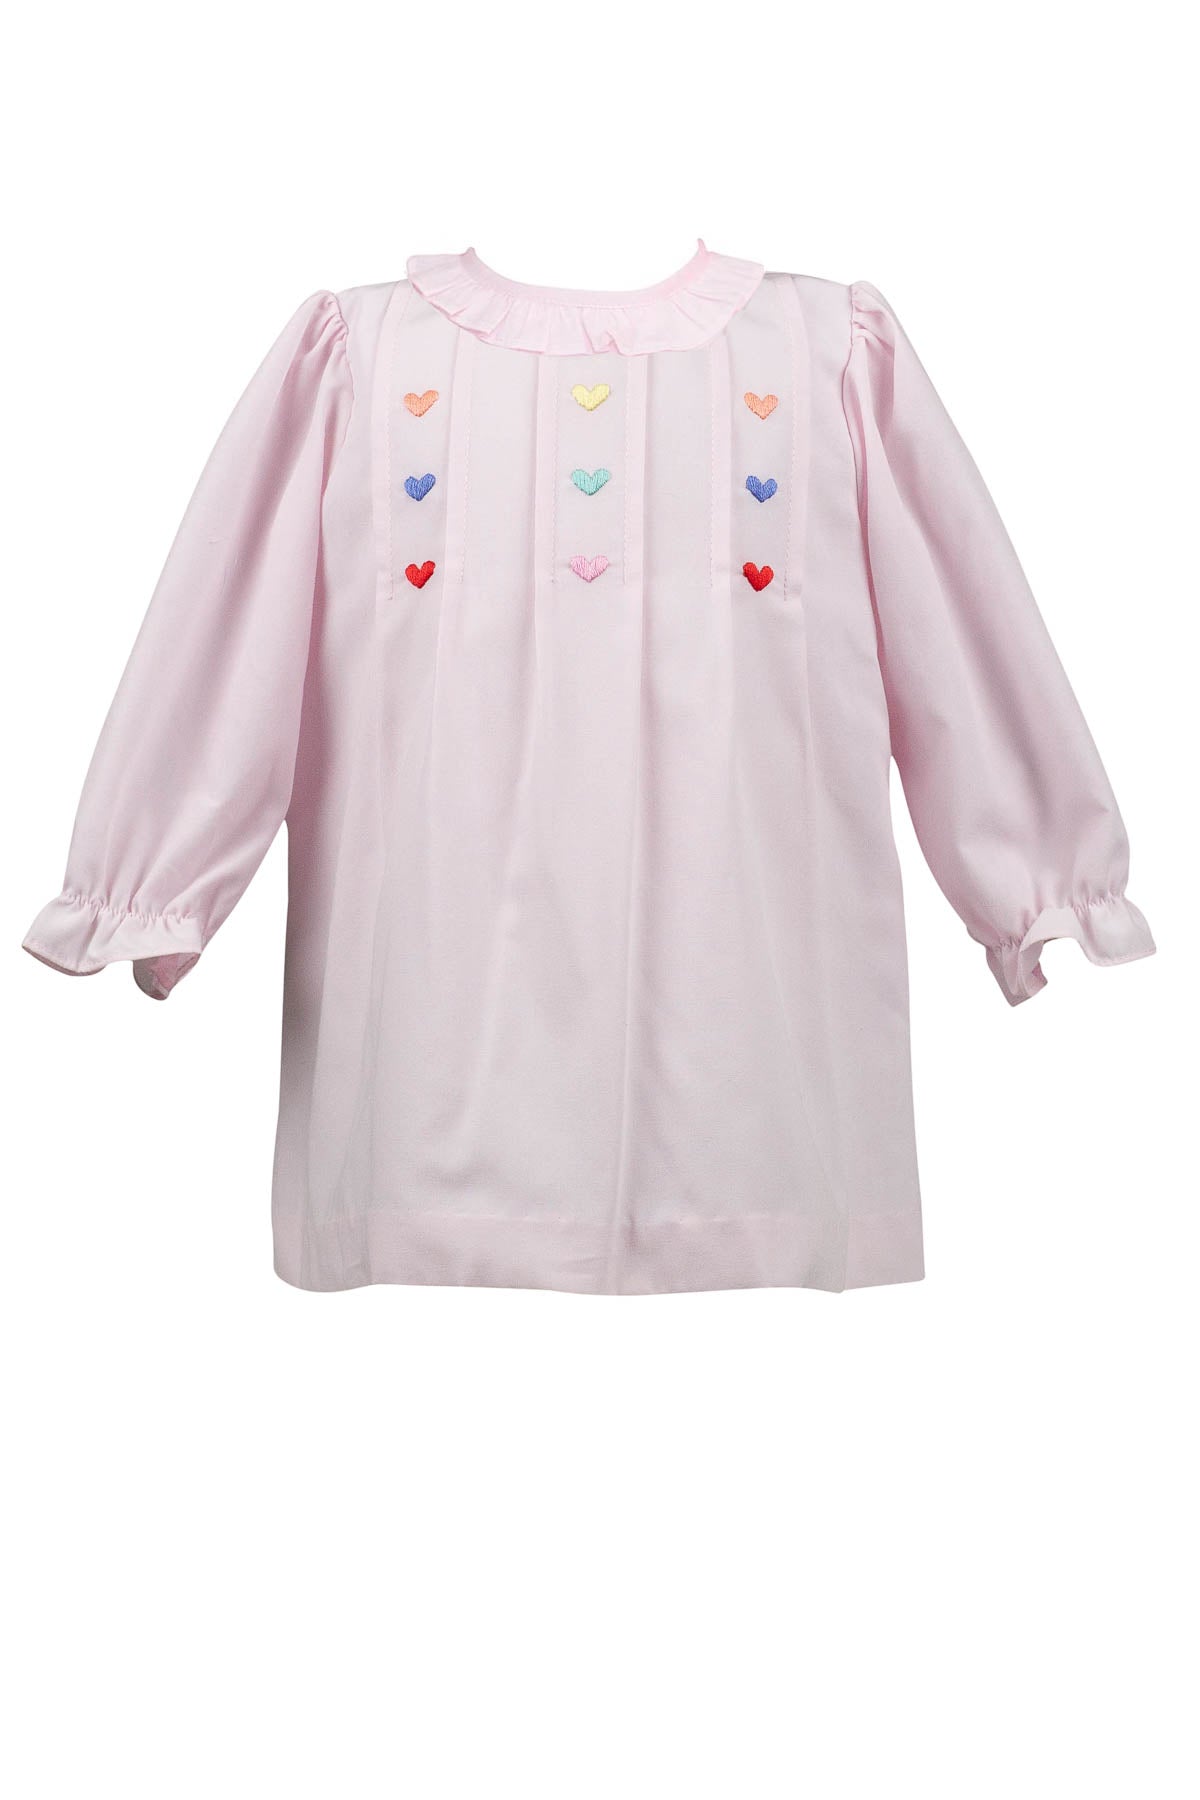 Cherub Heart Dress (2T,3T,4T,5,6)